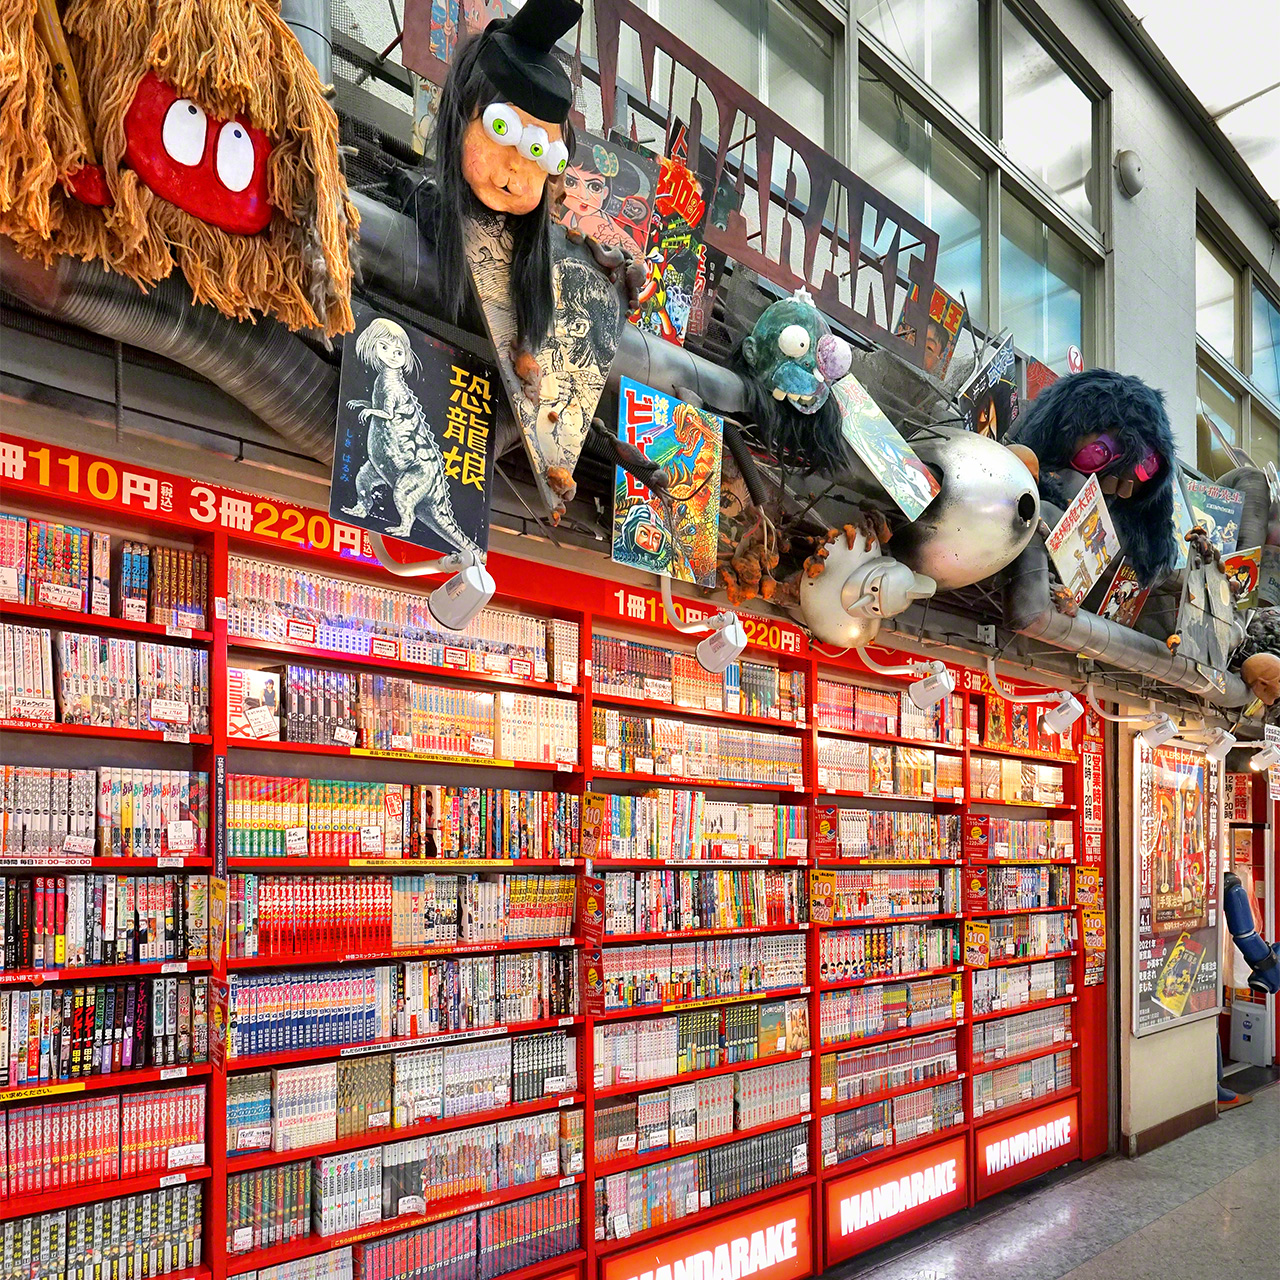 « Mandarake magasin principal » au 2e étage de Nakano Broadway, proposant une quantité incroyable de mangas shônen (pour jeunes) et seinen (pour un public plus mature).